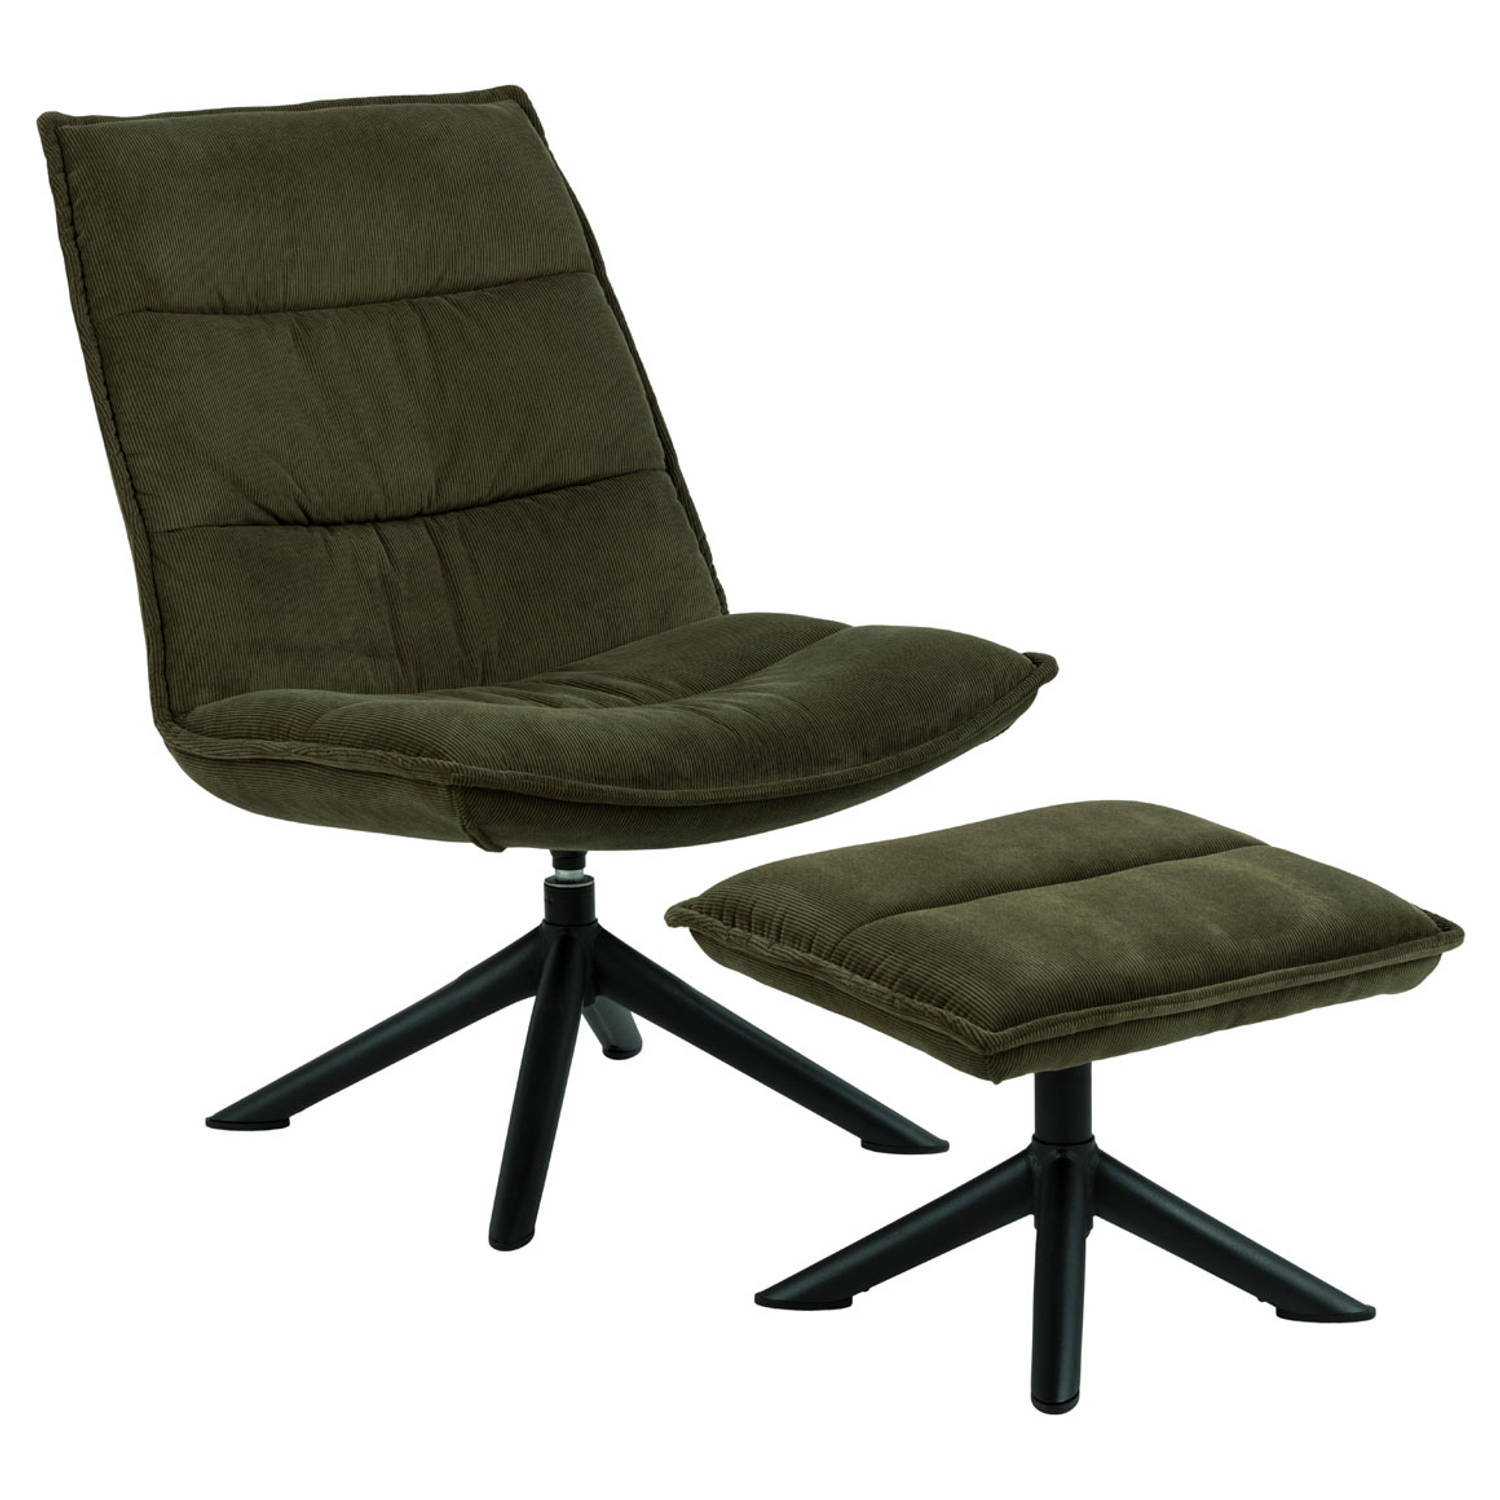 Voorkeur Blozend maandag Bliwa fauteuil loungestoel met voetenbank groen, zwart. | Blokker